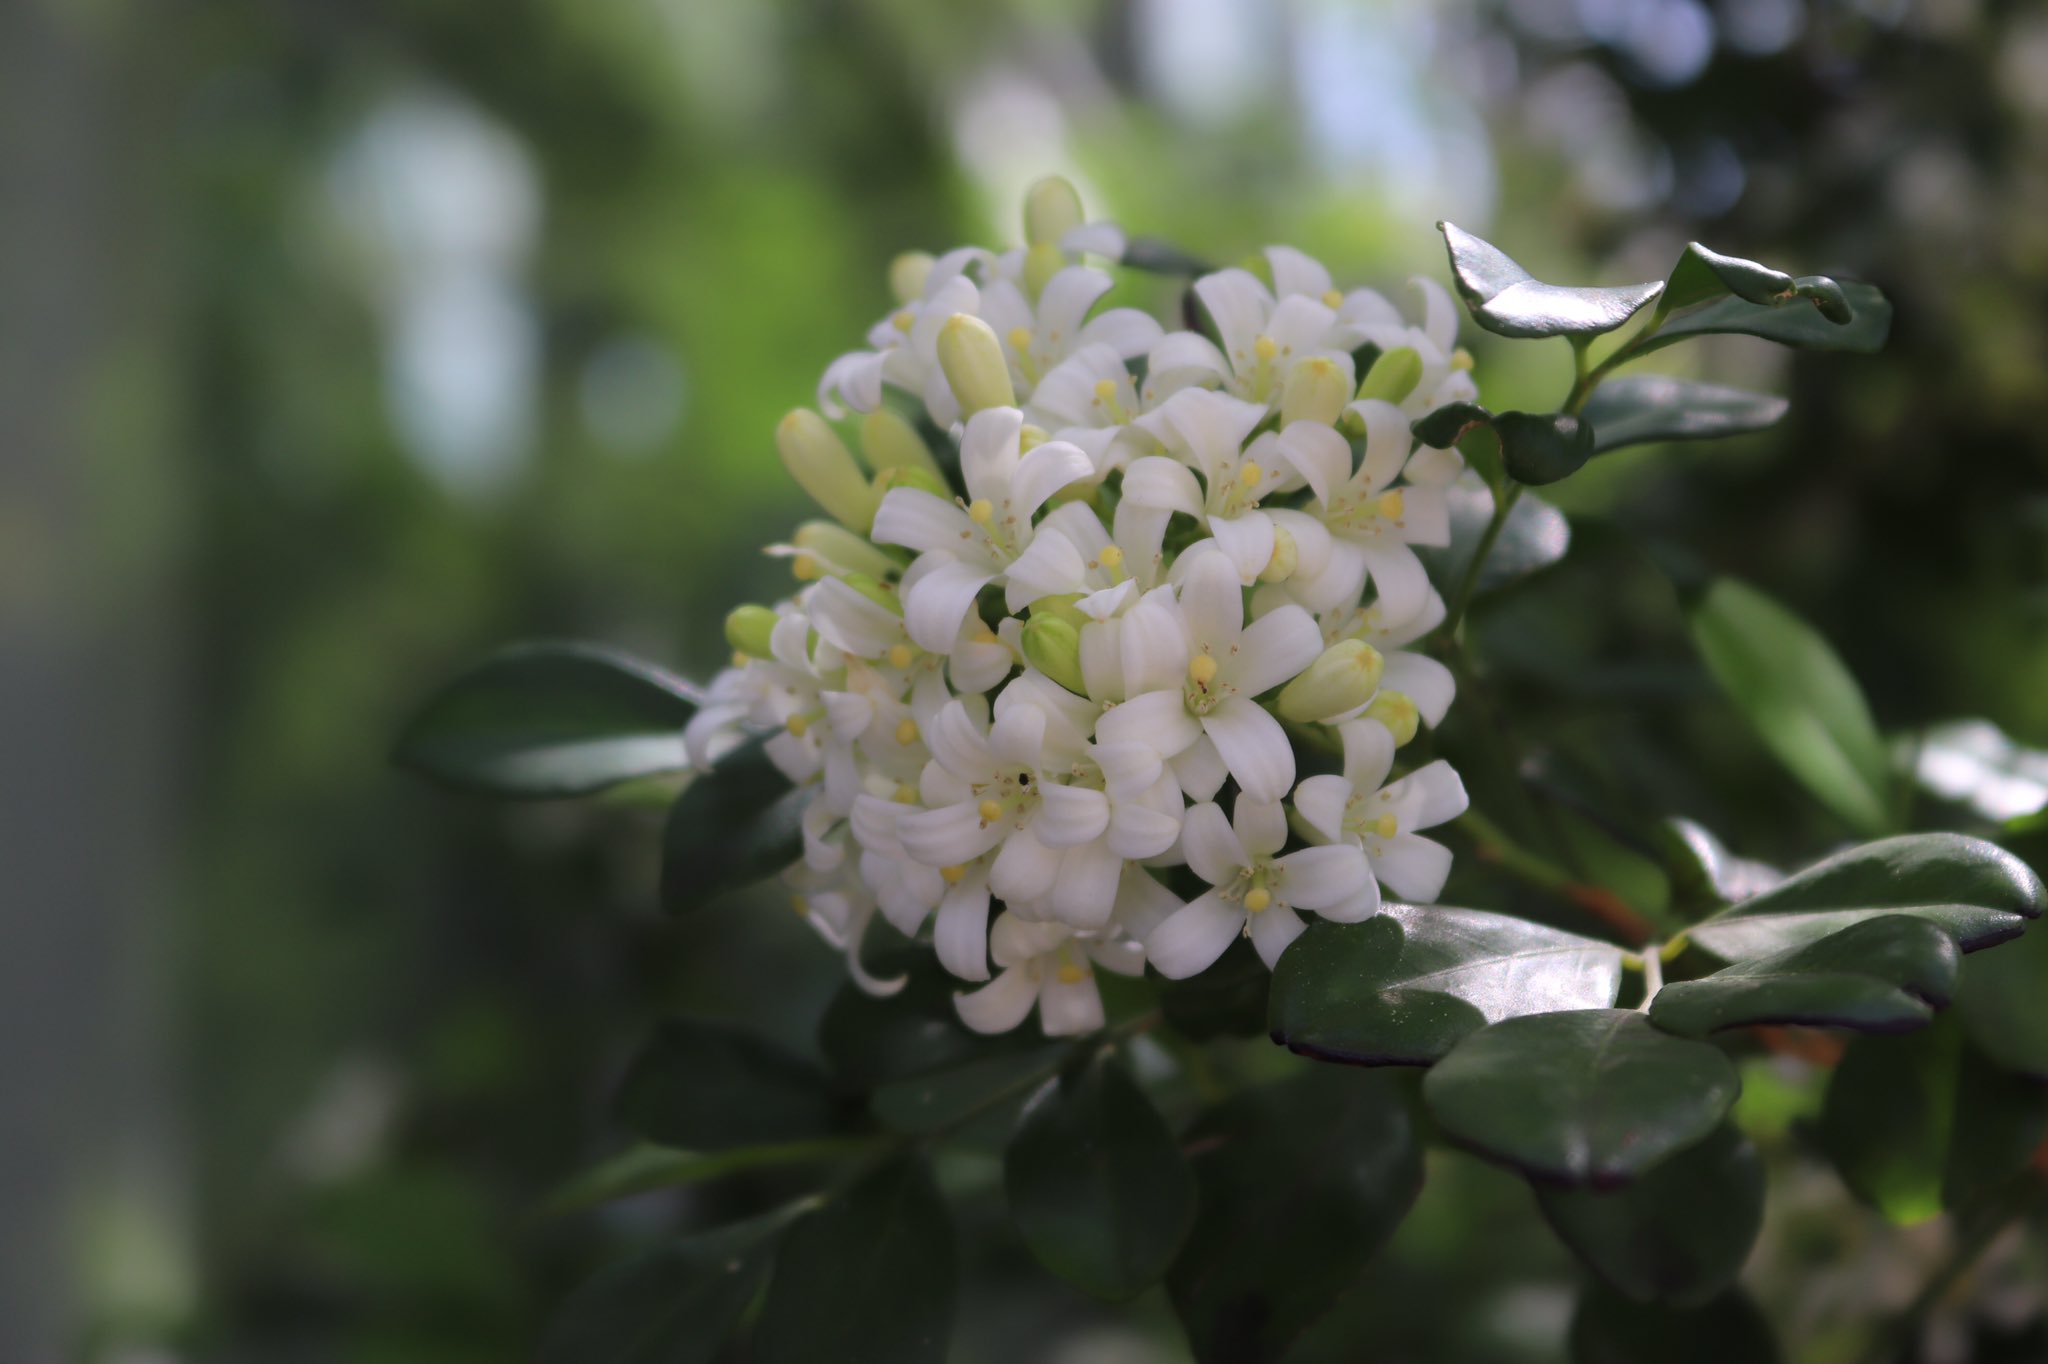 咲くやこの花館 熱帯花木室を歩いていたら いい香り がしてきました ハイビスカスワールドの手前にあるのは ミカン科の ゲッキツ です ジャスミンのような爽やかな香りがします 可愛いお花と一緒に 香りも楽しんでくださいね 咲くやこの花館 虫を